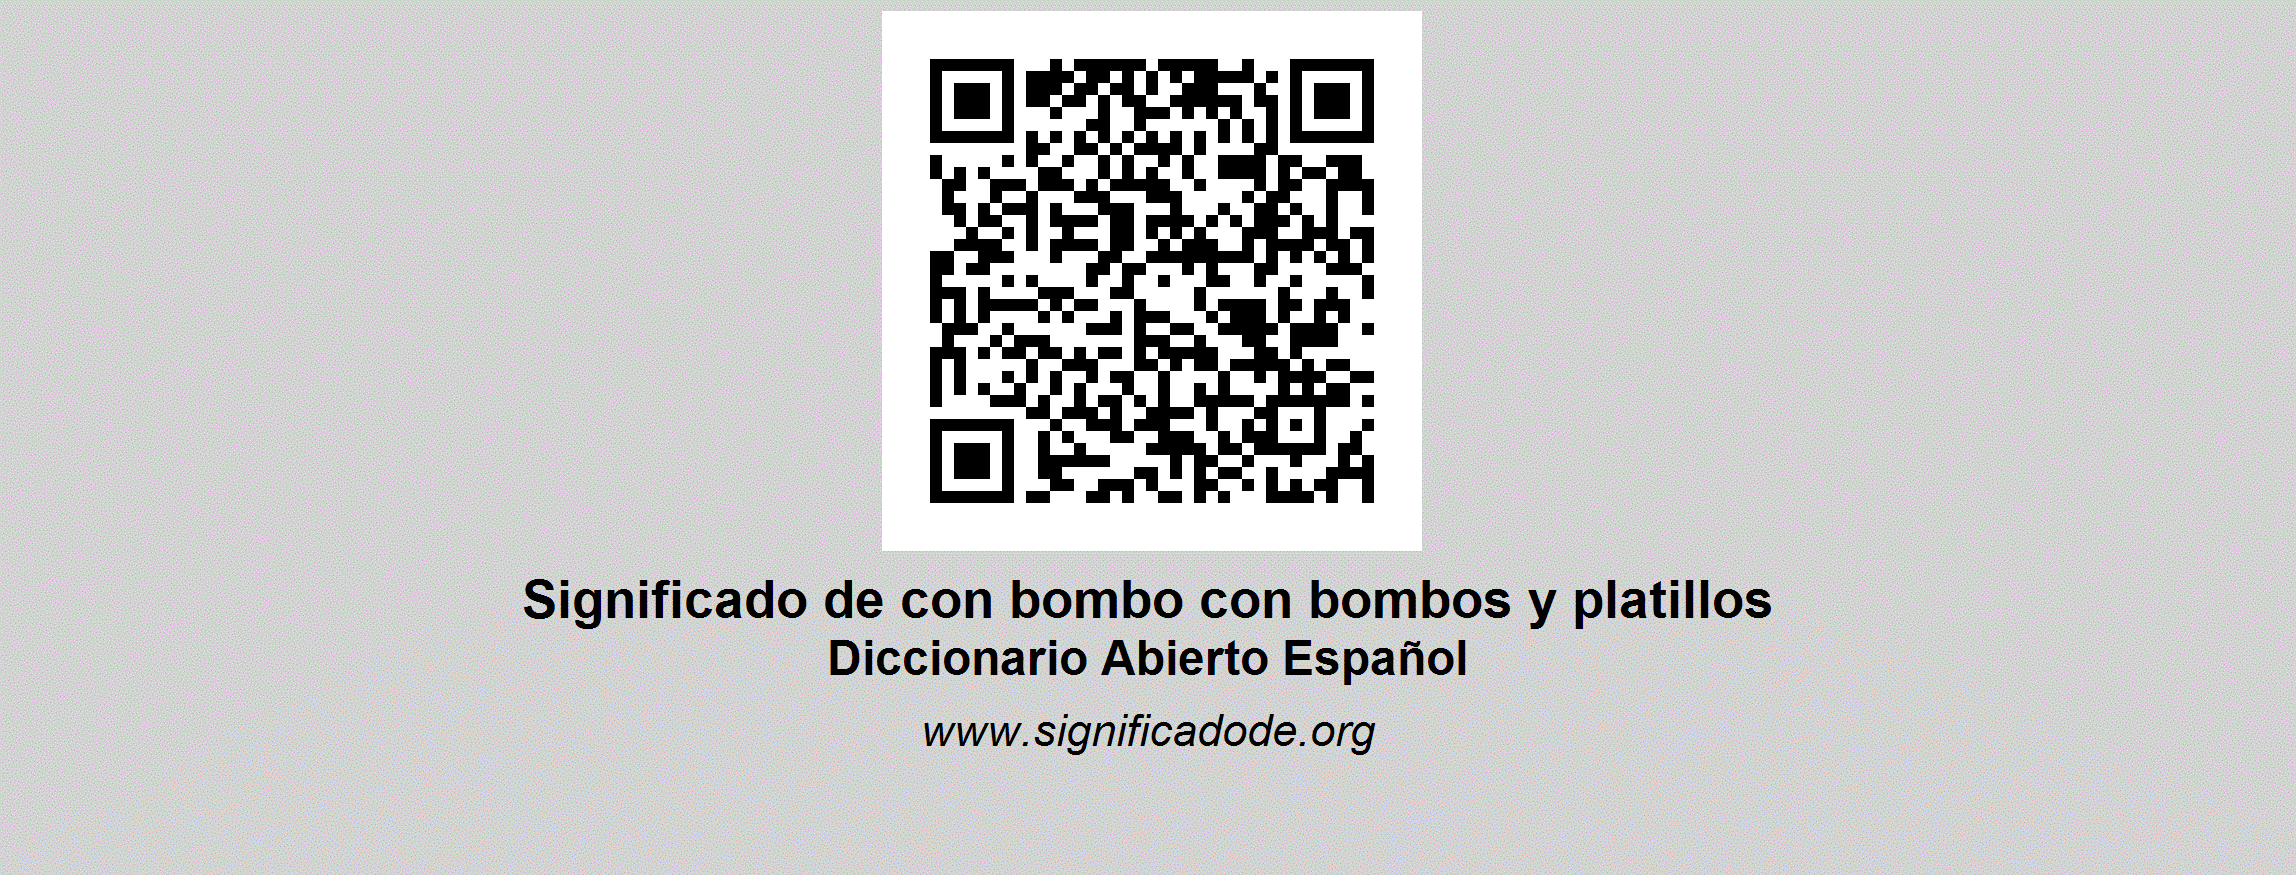 CON BOMBO CON BOMBOS Y PLATILLOS Diccionario Abierto de Español